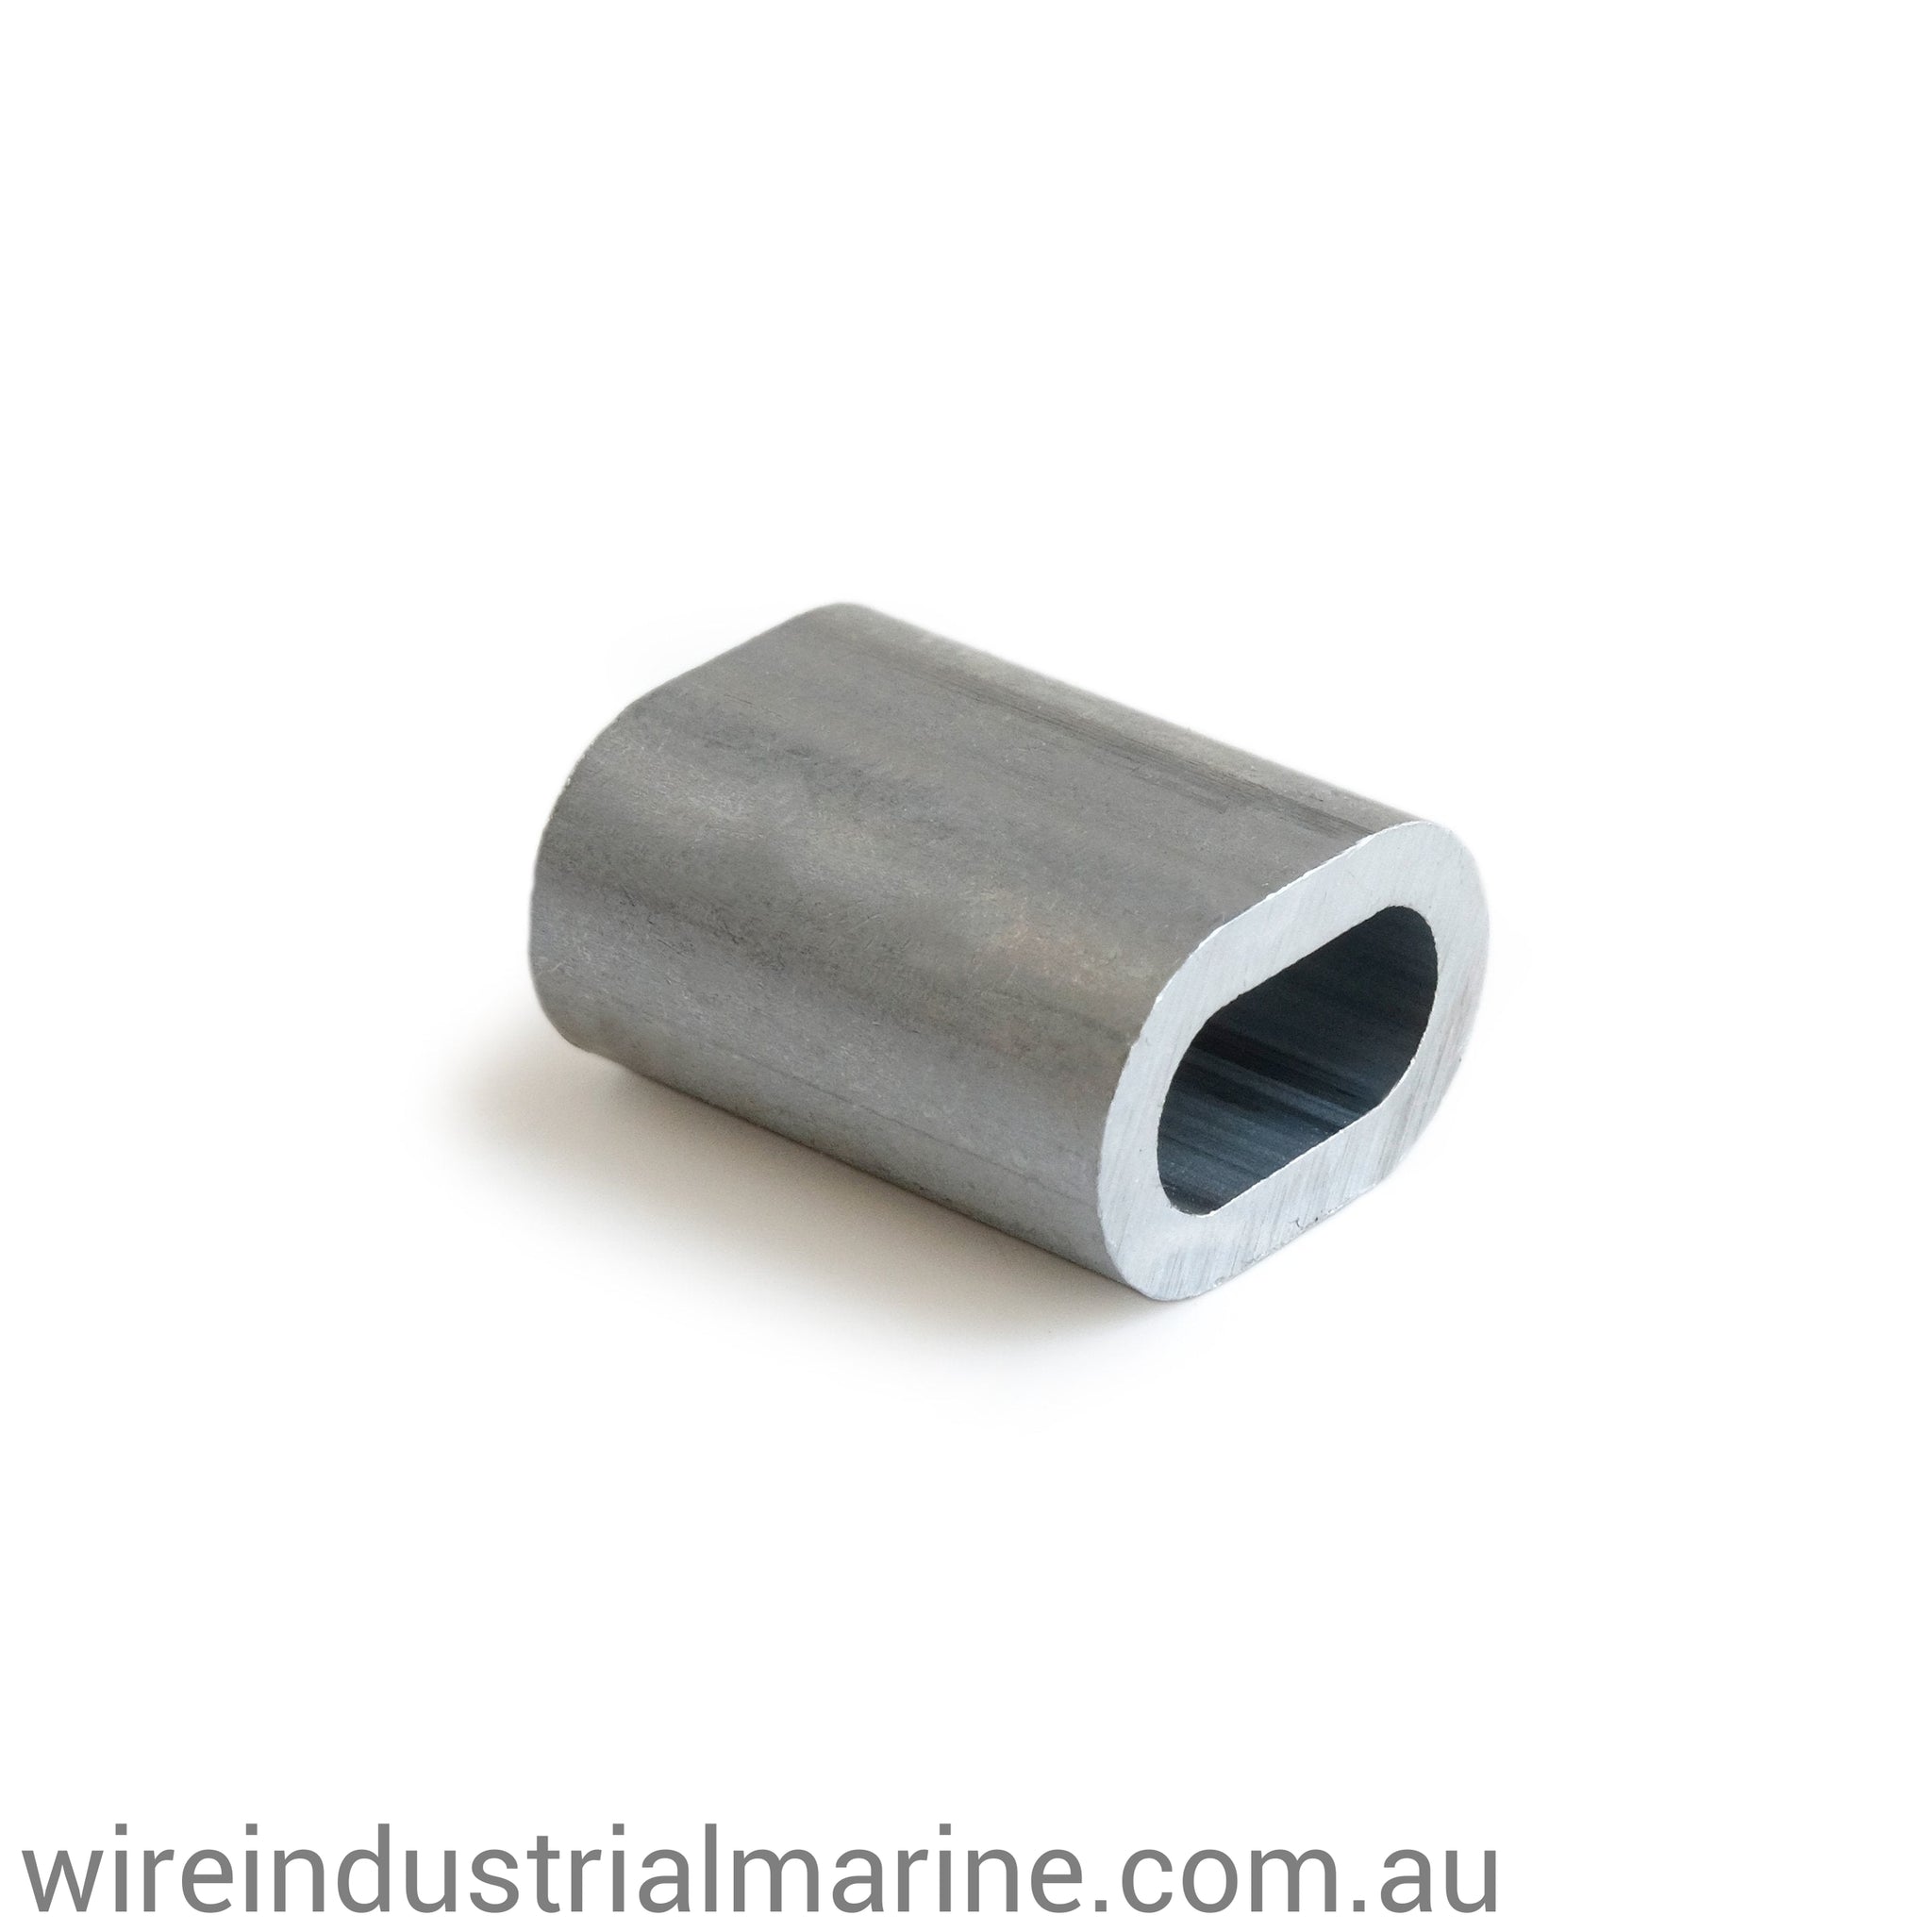 5mm ALLOY-DIN Code machine press ferrule for galvanised wire-wireindustrialmarine